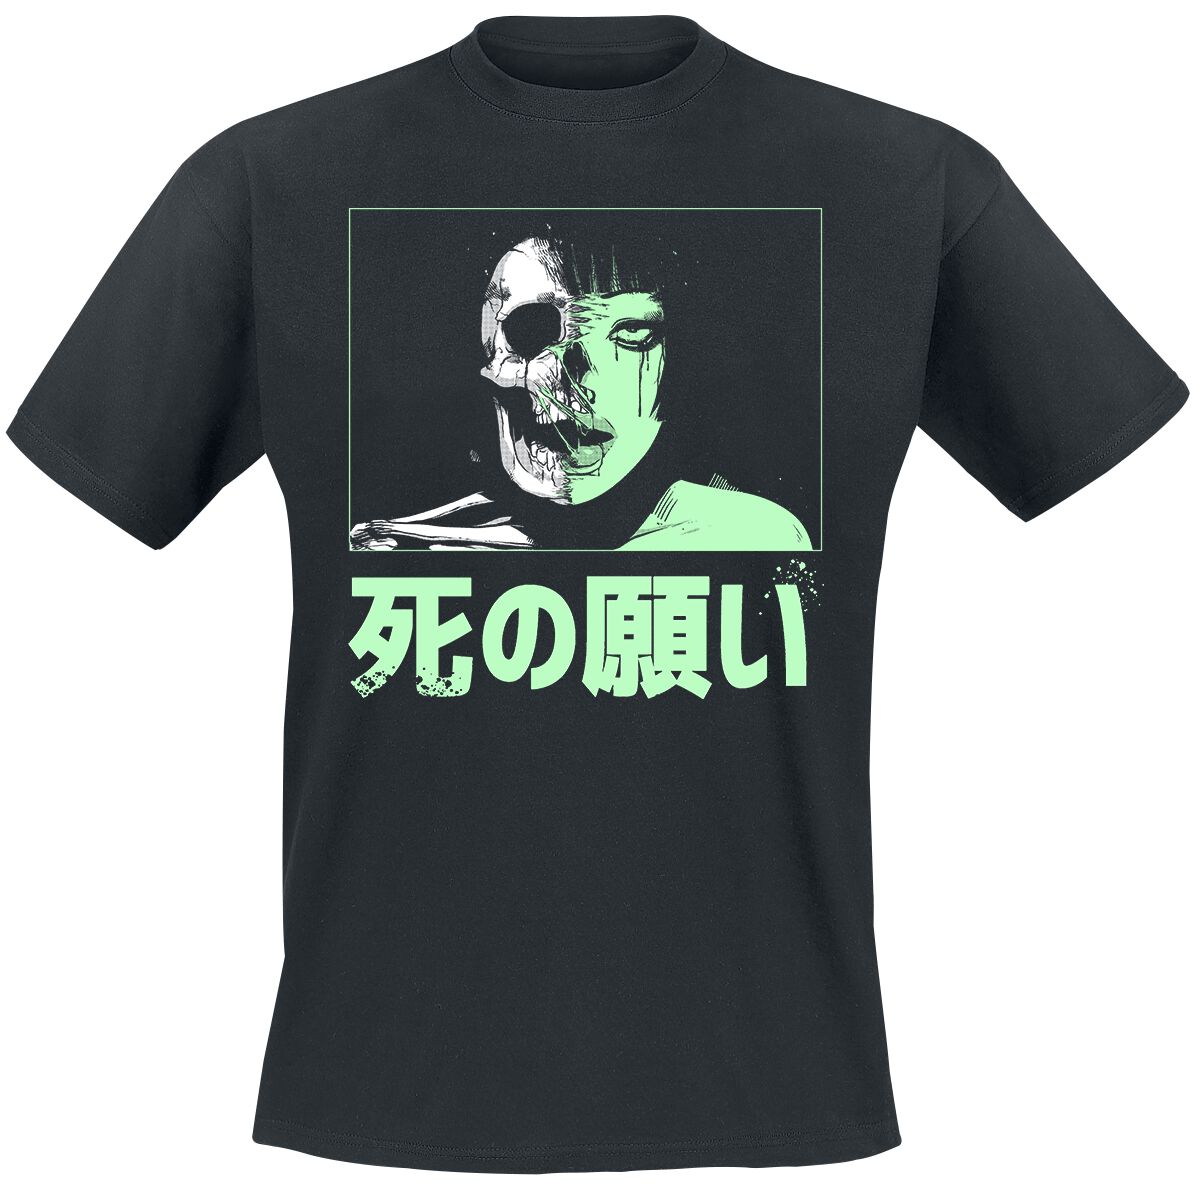 Zombie Makeout Club T-Shirt - ZMC - Half Life - S bis XL - für Männer - Größe M - schwarz  - Lizenzierter Fanartikel